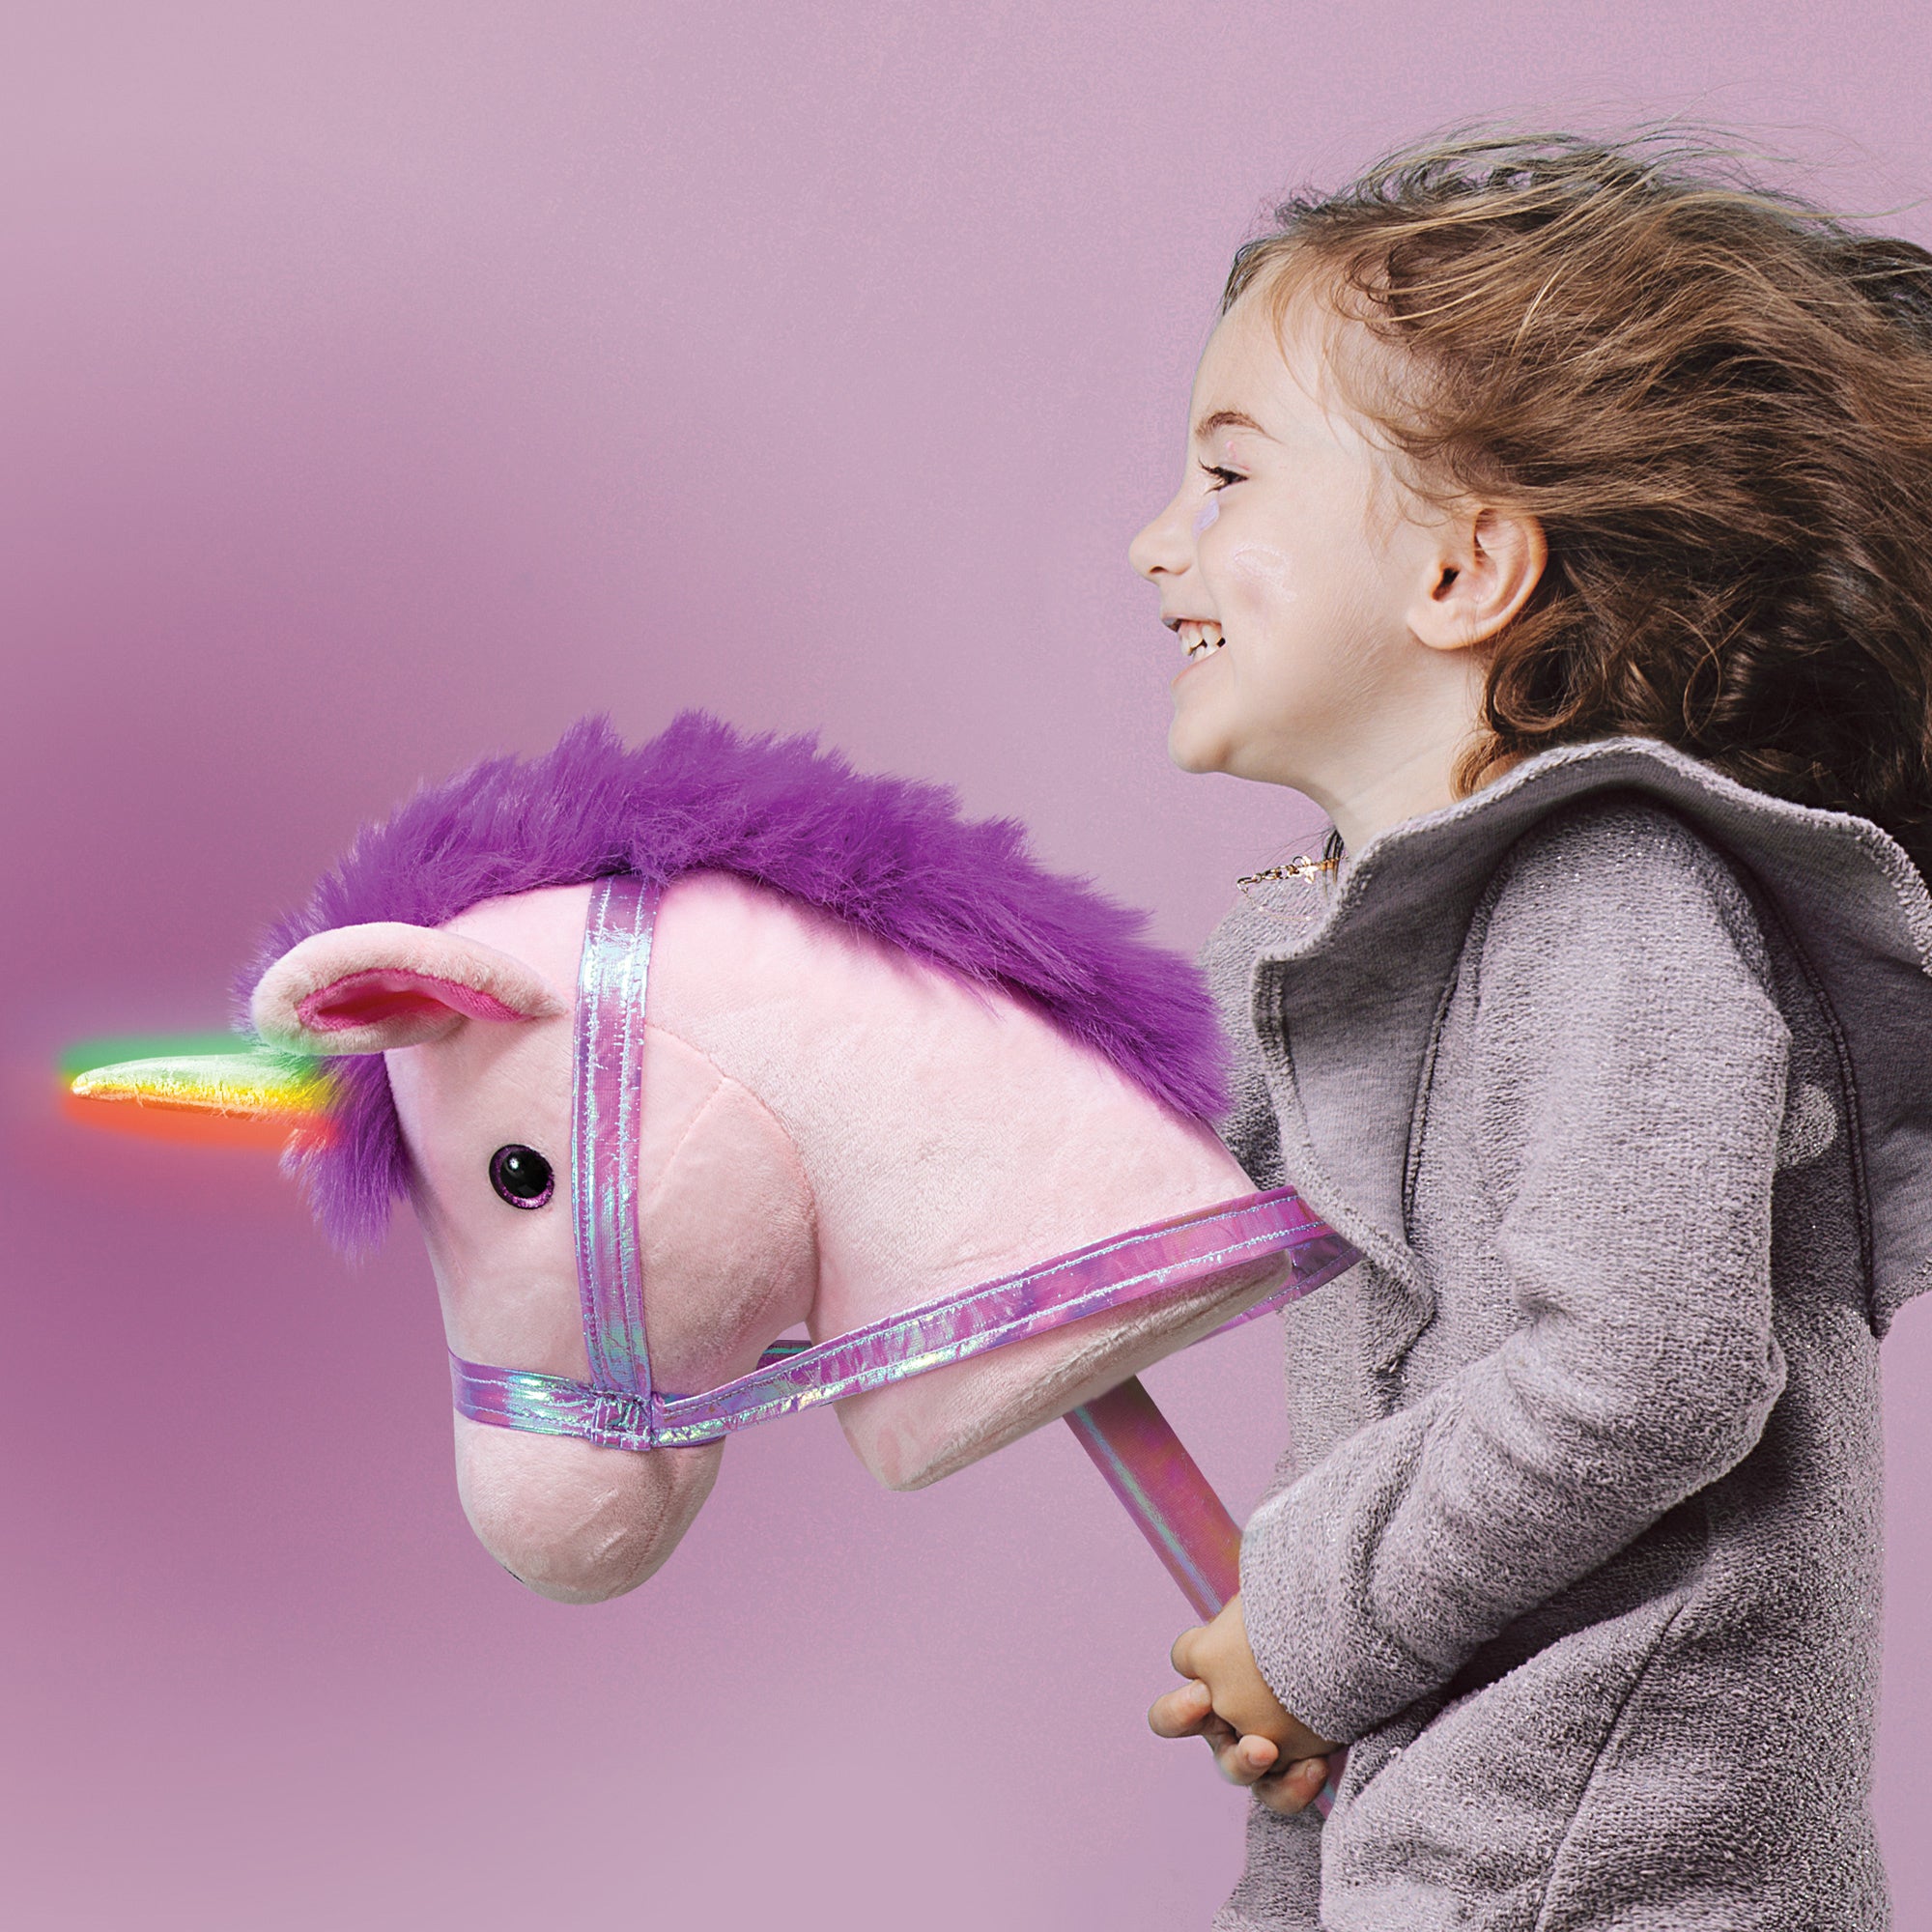 Ride On Starlight Unicorn Toy